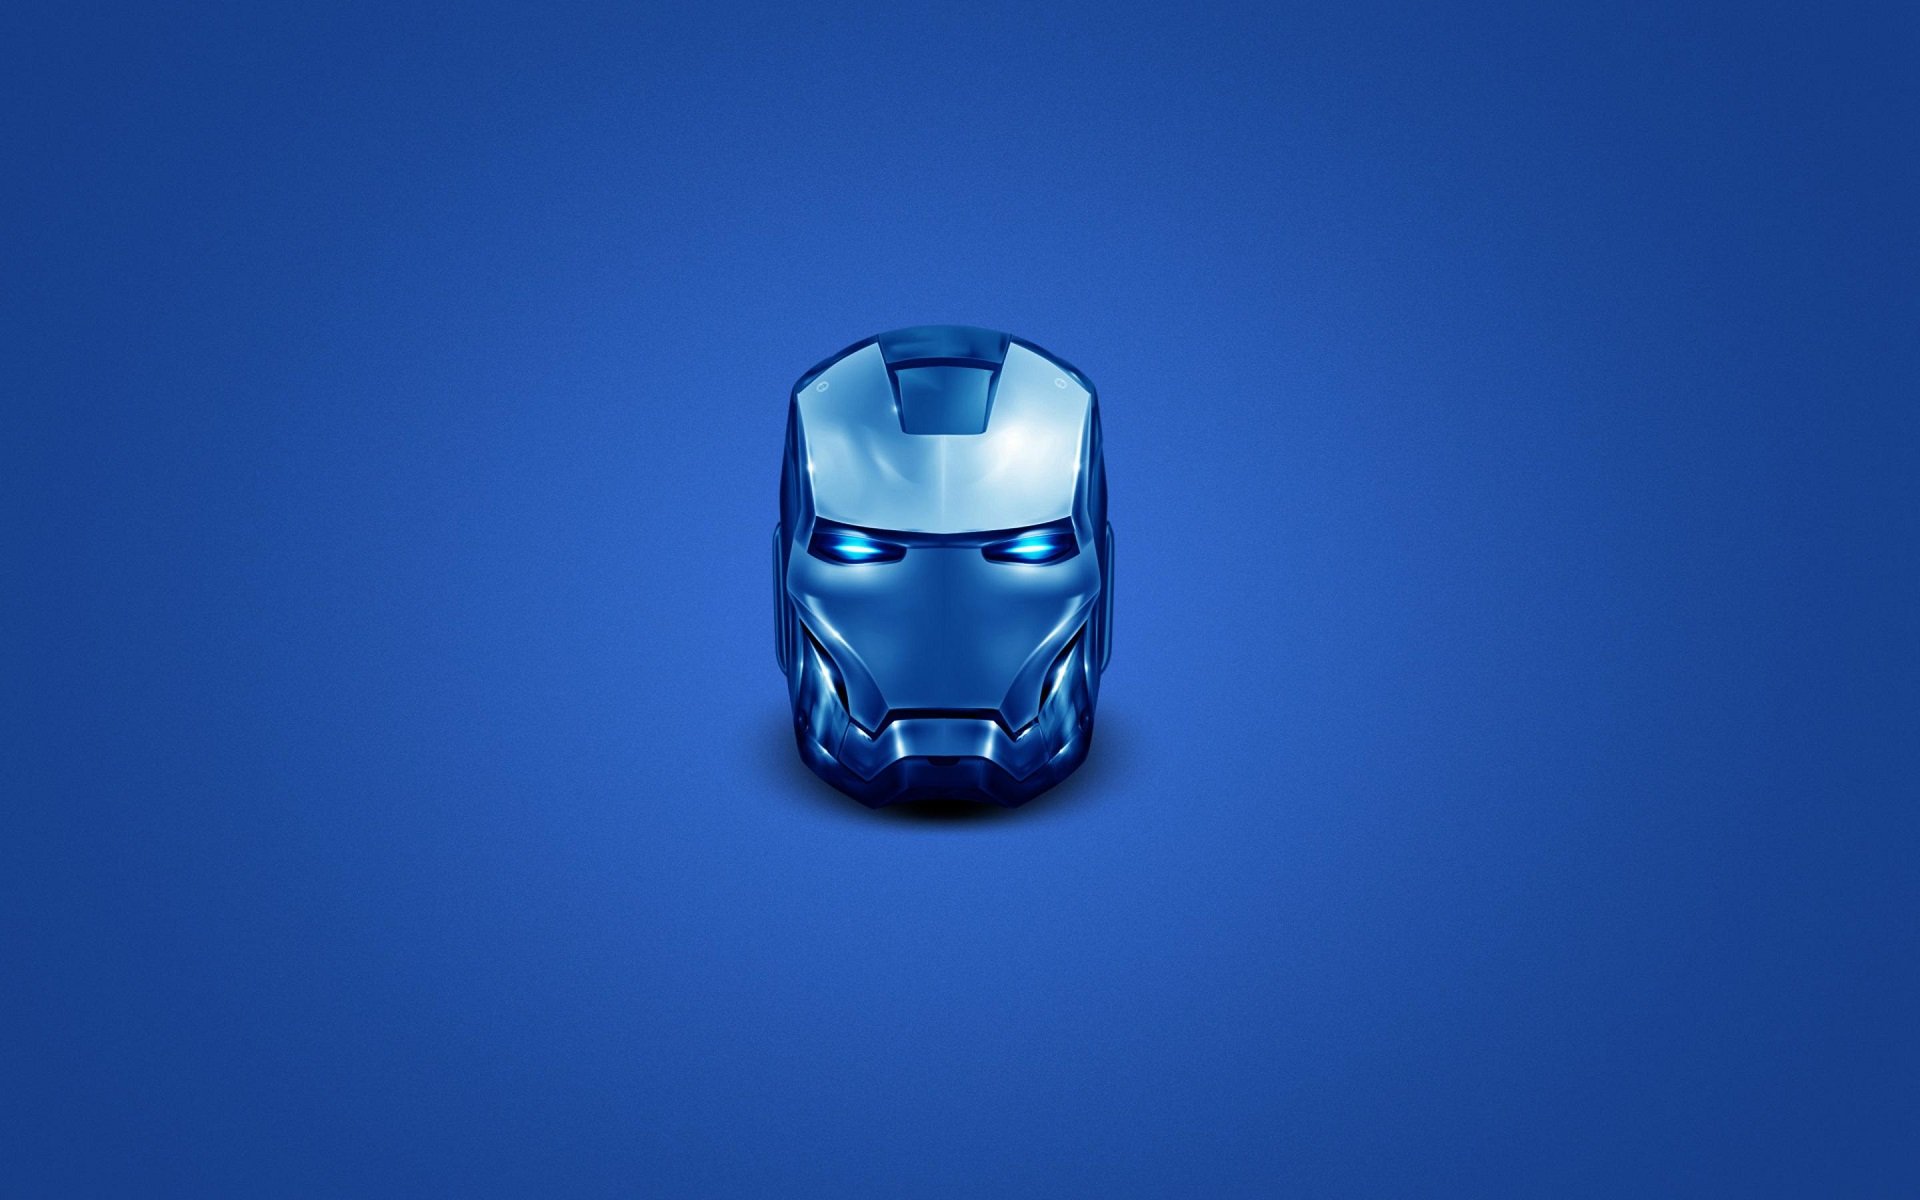 head, Iron Man, Helmet, Superhero, Blue, Simple background, Minimalism, Marvel Comics, Marvel Cinematic Universe Wallpaper